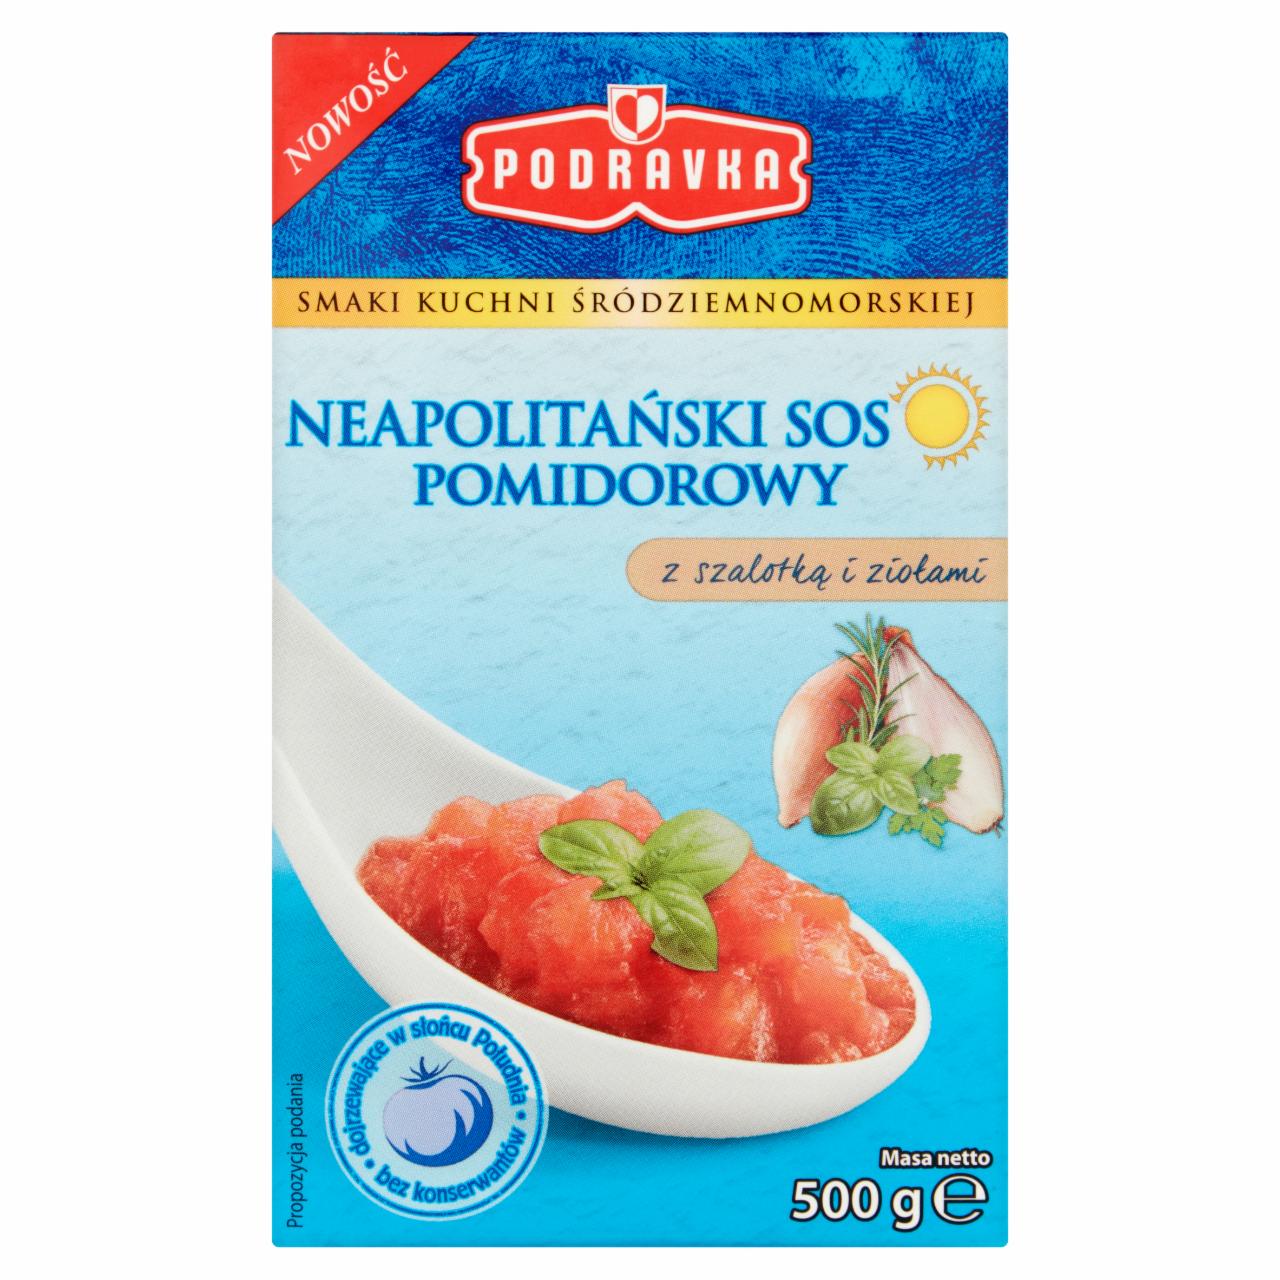 Zdjęcia - Podravka Neapolitański sos pomidorowy z szalotką i ziołami 500 g